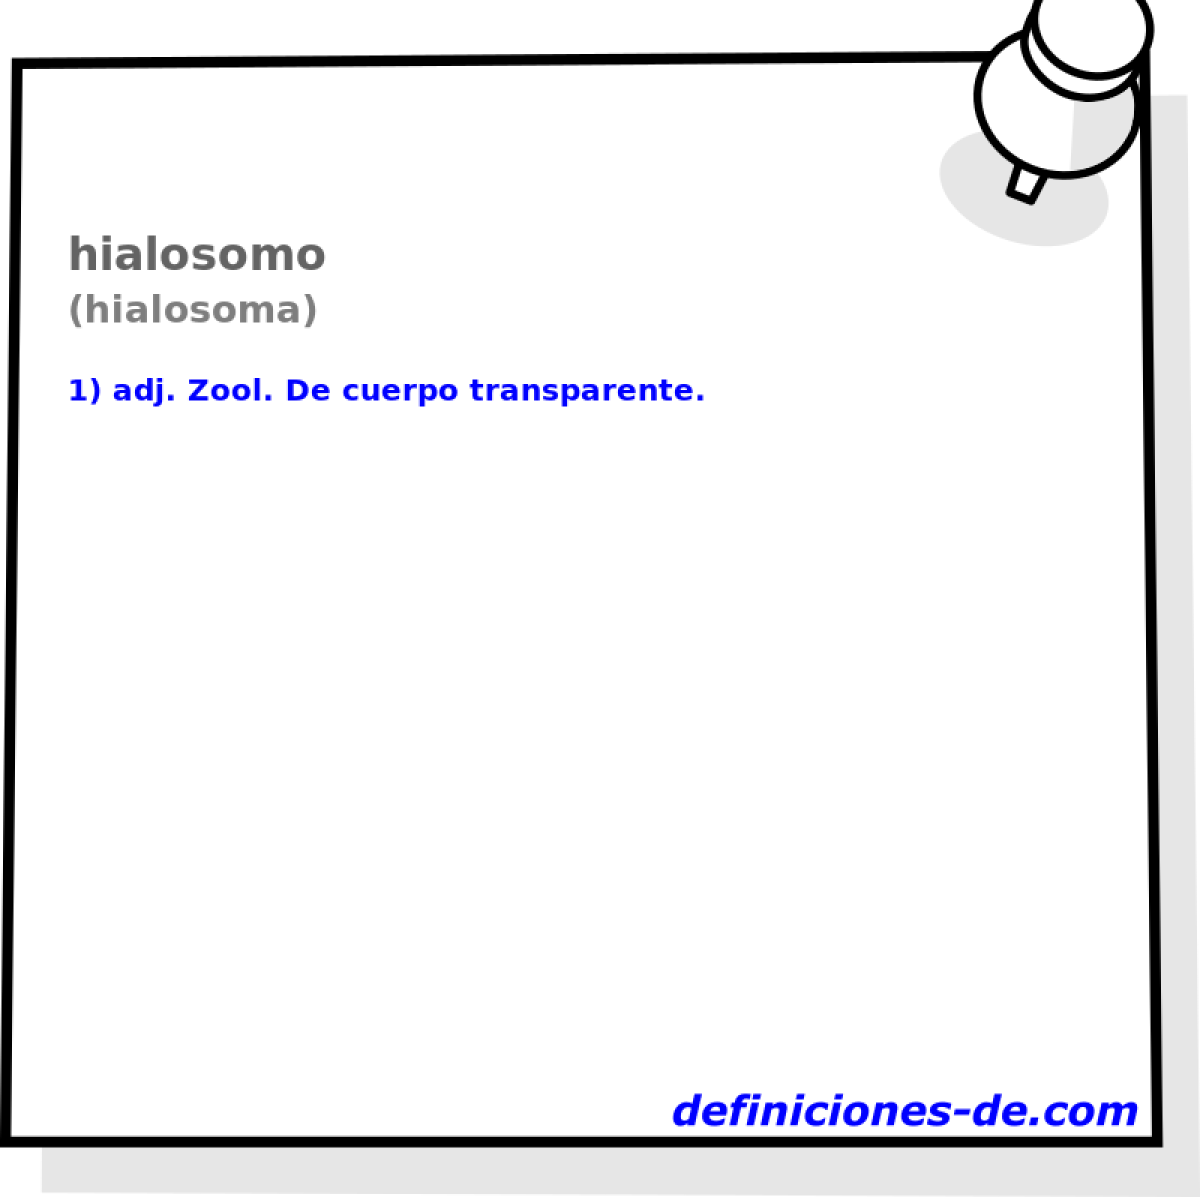 hialosomo (hialosoma)